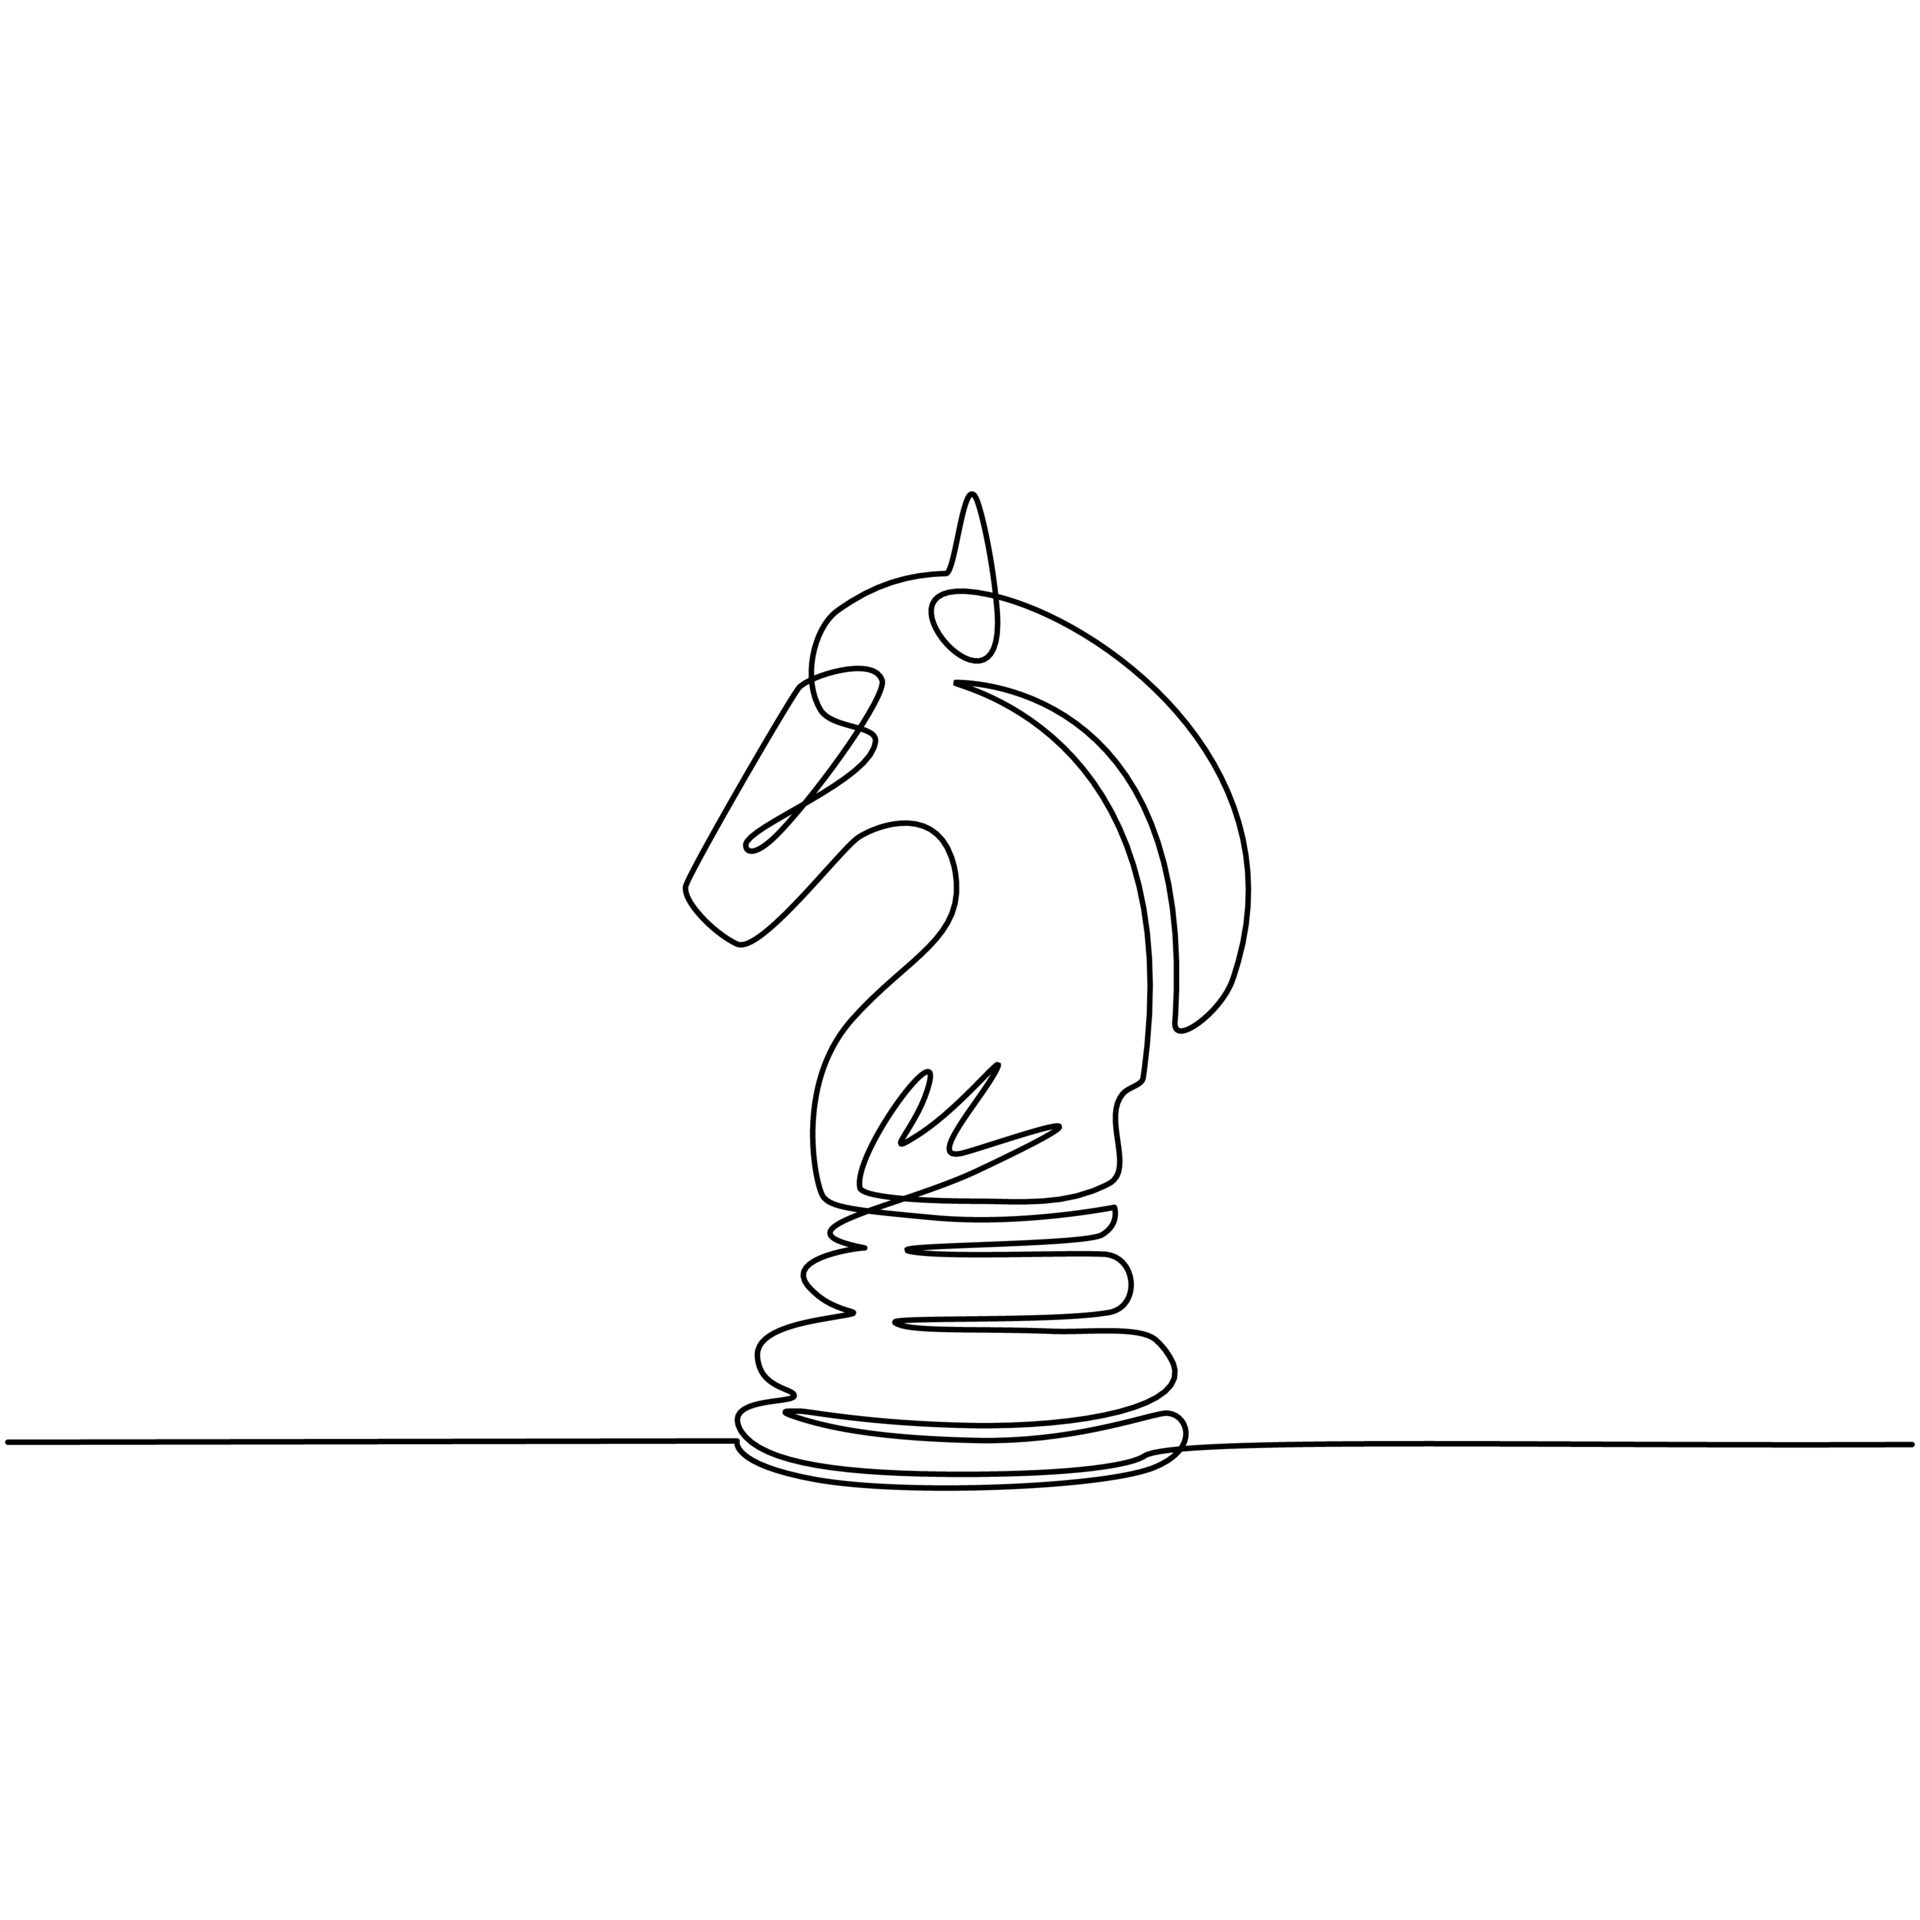 único logotipo de peão de xadrez de desenho de linha isolado no